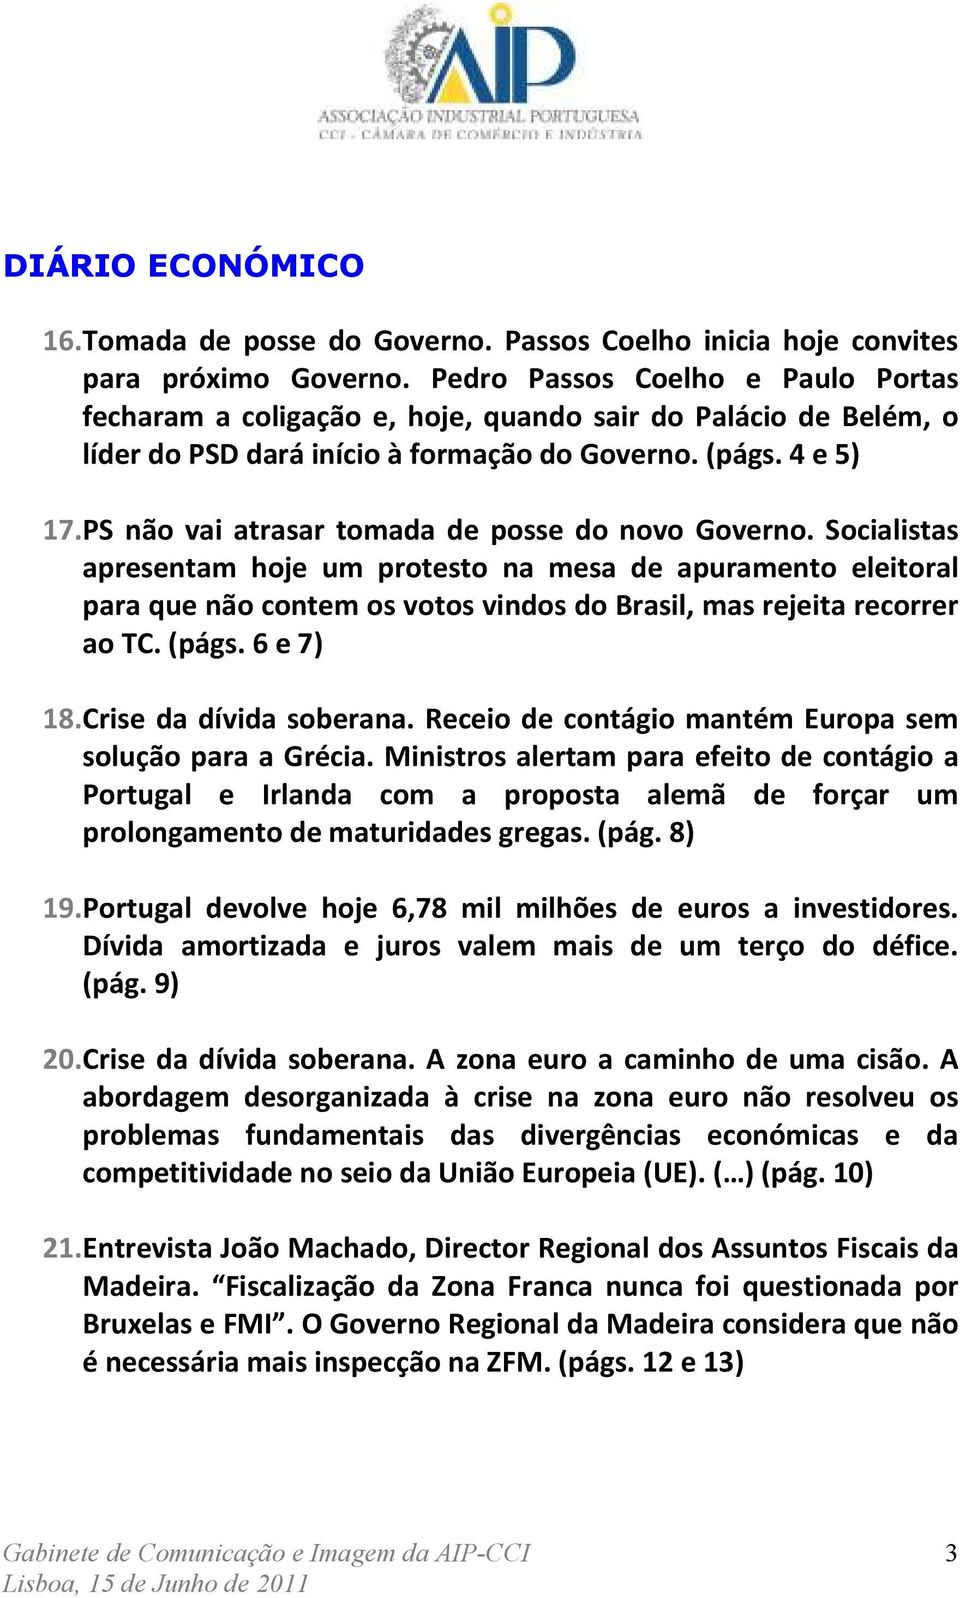 PS não vai atrasar tomada de posse do novo Governo. Socialistas apresentam hoje um protesto na mesa de apuramento eleitoral para que não contem os votos vindos do Brasil, mas rejeita recorrer ao TC.